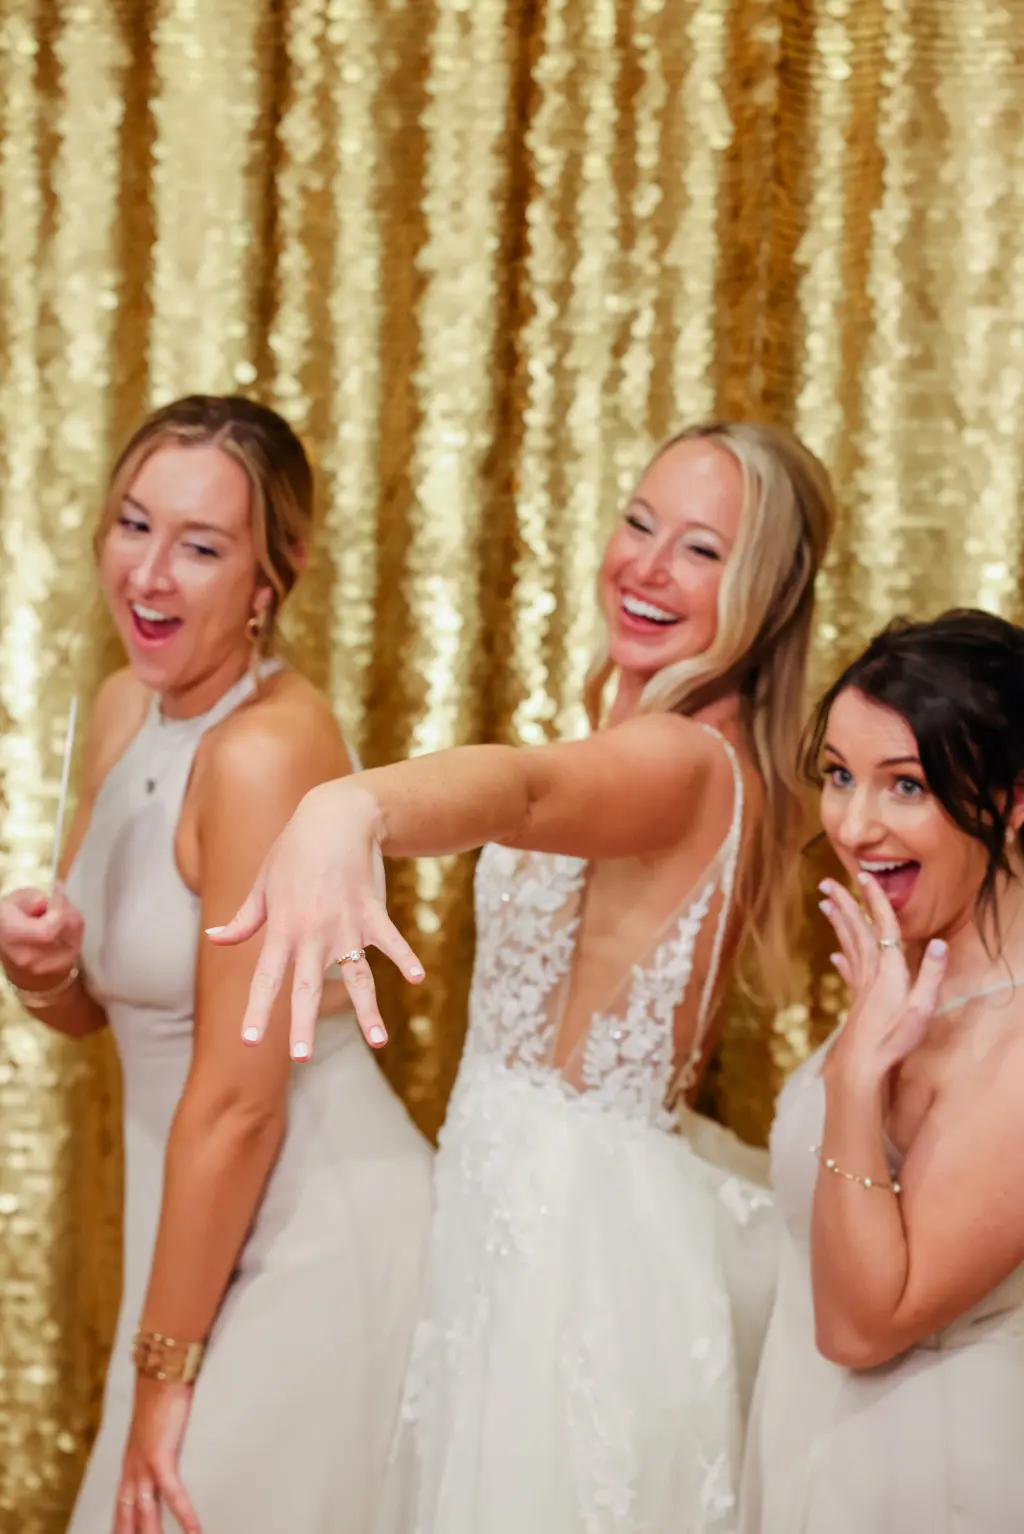 Bride and Bridesmaids at Wedding Reception | Tampa Bay Gala Photobooth